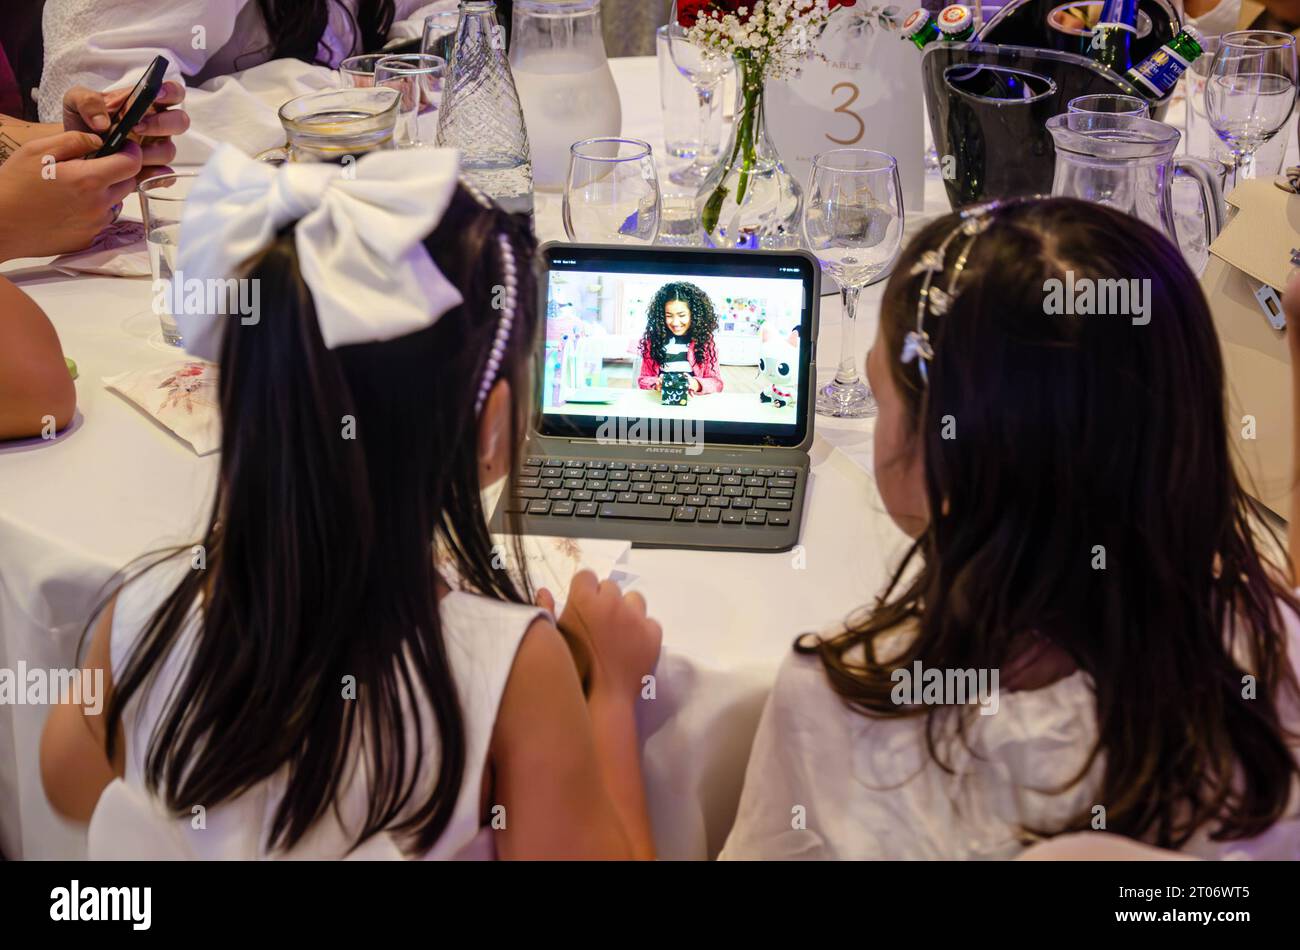 Ein paar junge Mädchen werden auf einer Party unterhalten und sehen fernsehsendungen auf einem kleinen Laptop-Tablet-Computer, der hinter ihm zu sehen ist Stockfoto